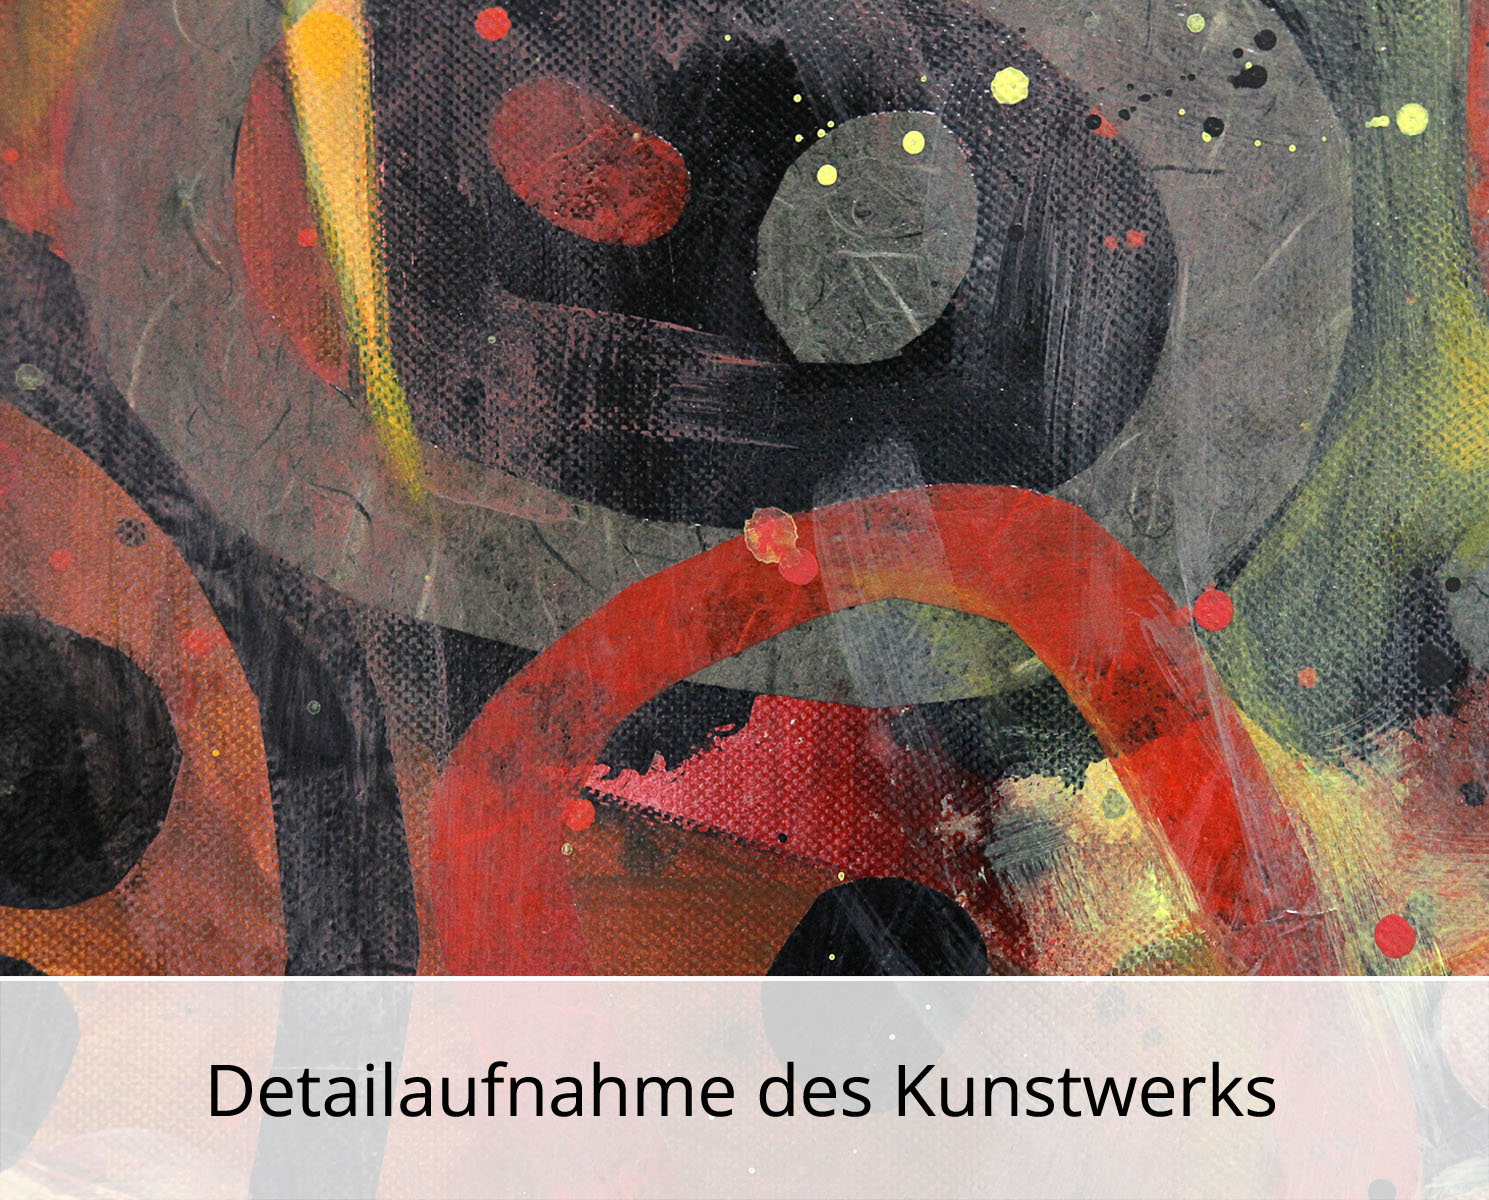 Abstrakte Malerei von Ewa Martens: "Himmlische Melodie VII", Original/Unikat